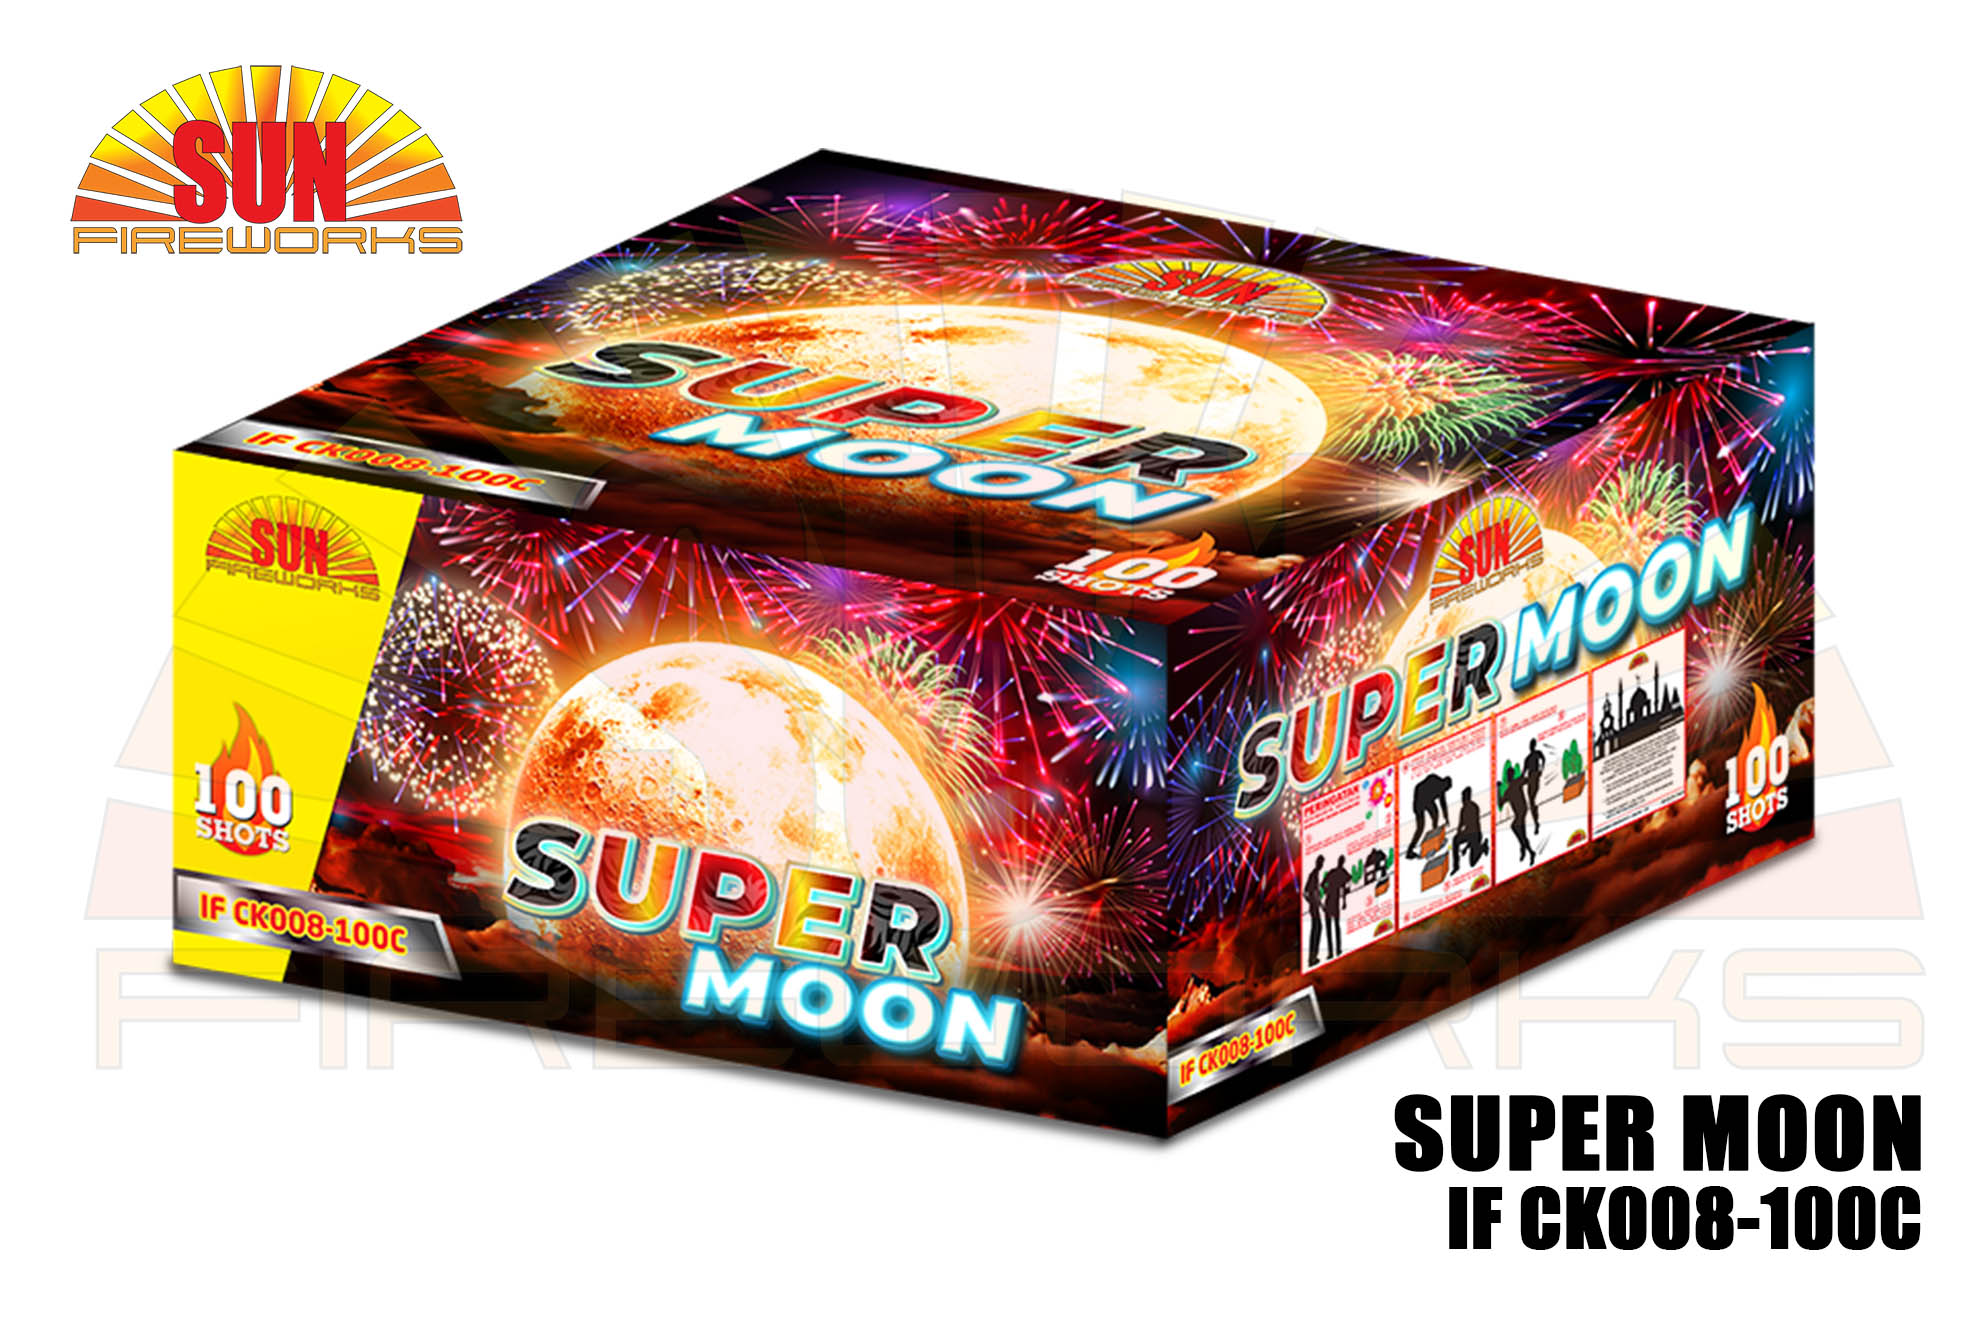 SUPER MOON IF CK008-100C